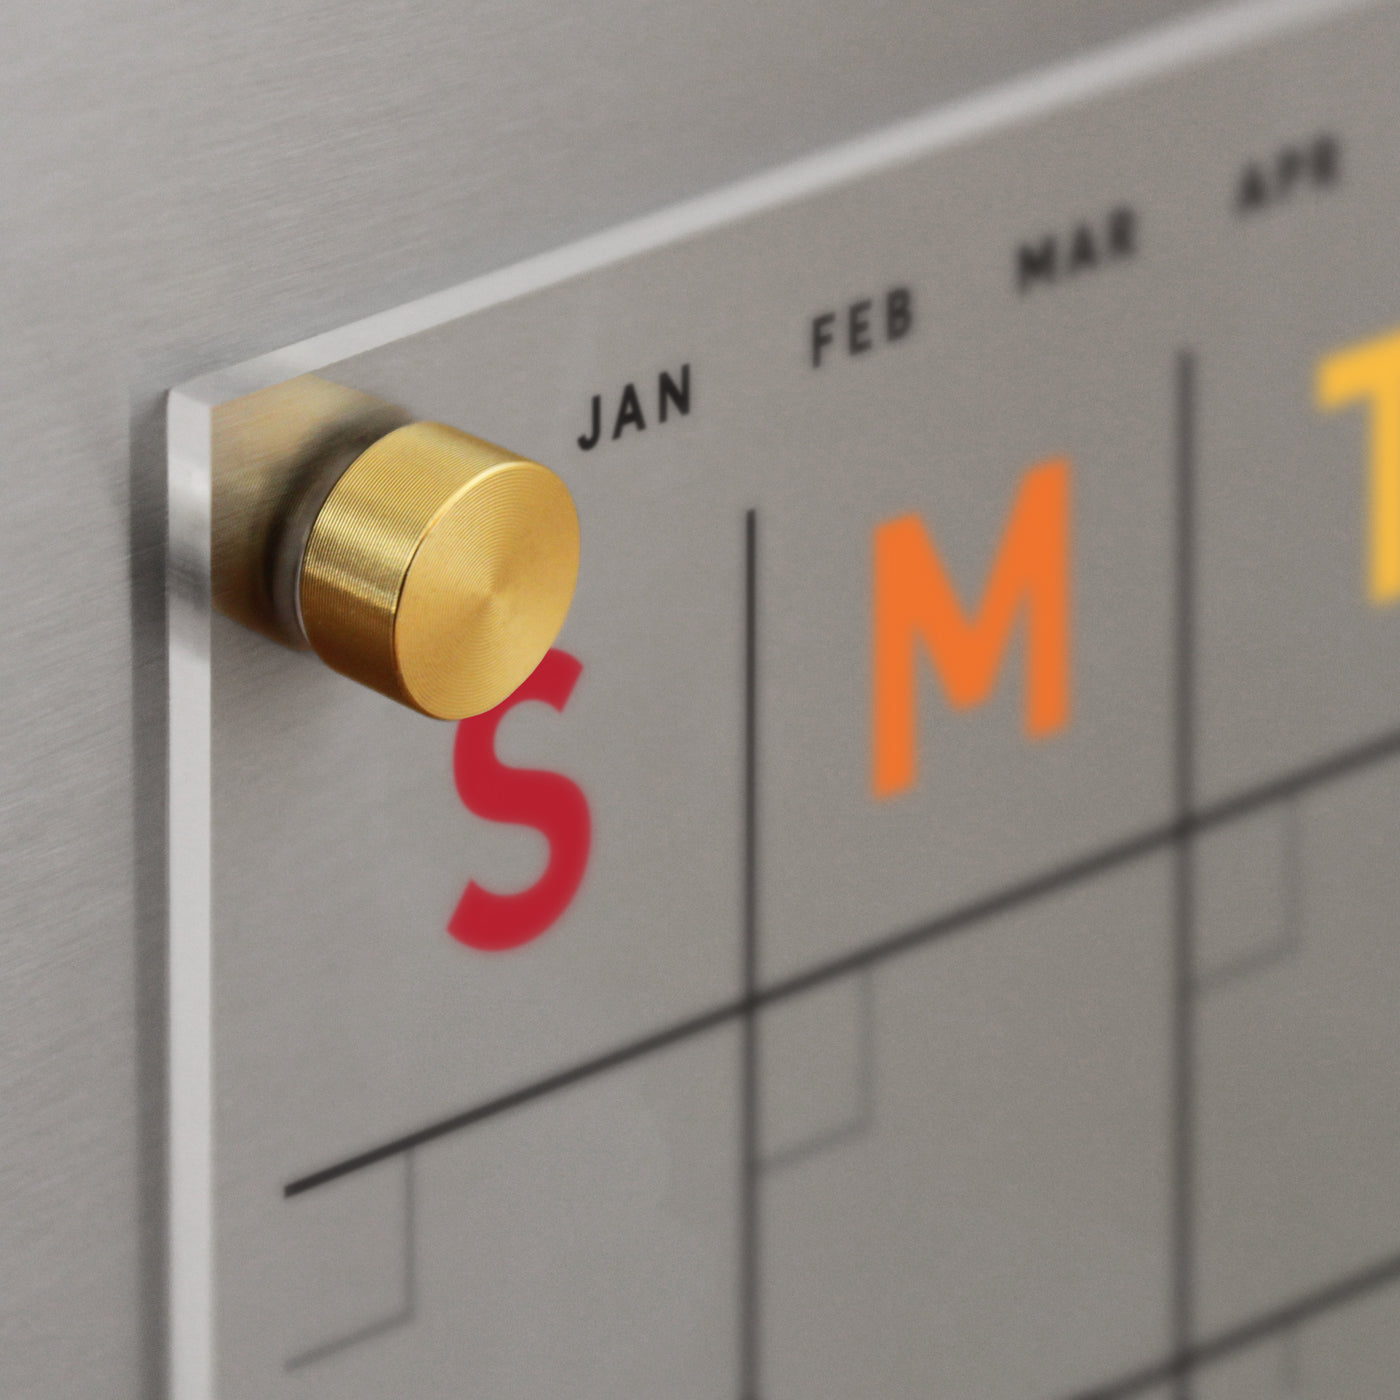 Acrylic fridge calendar with rainbow text